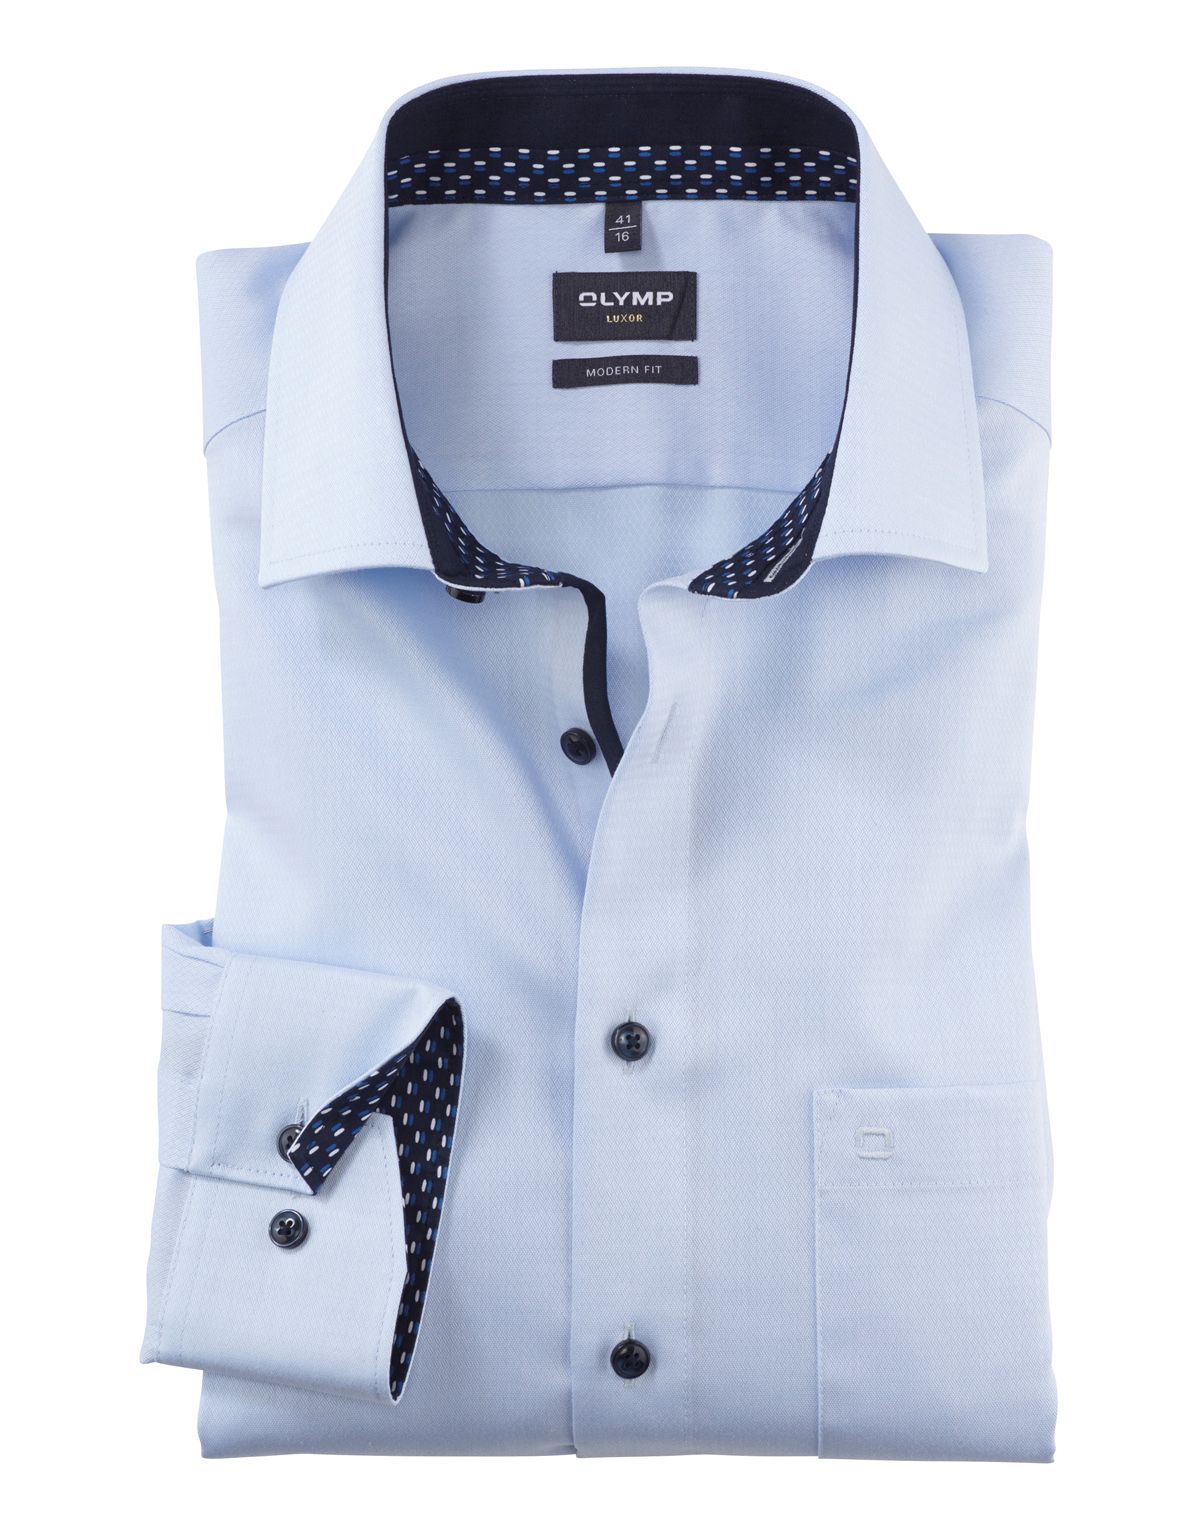 Рубашка мужская OLYMP Luxor, modern fit, фактурная ткань, рост до 176[Голубой]